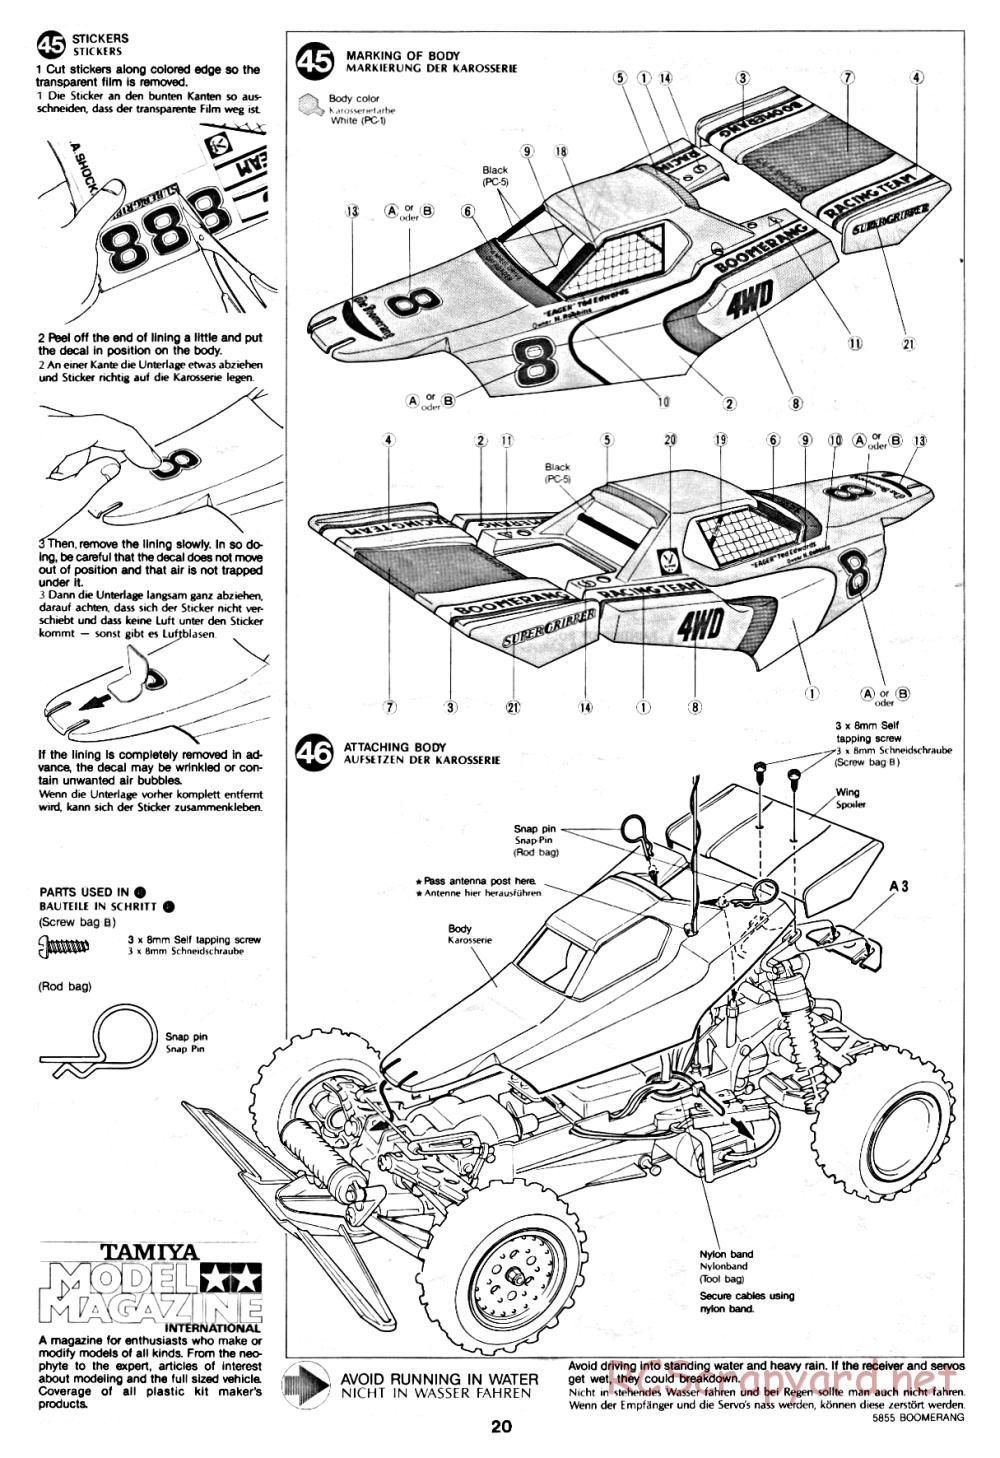 Tamiya - The Boomerang - 58055 - Manual - Page 20